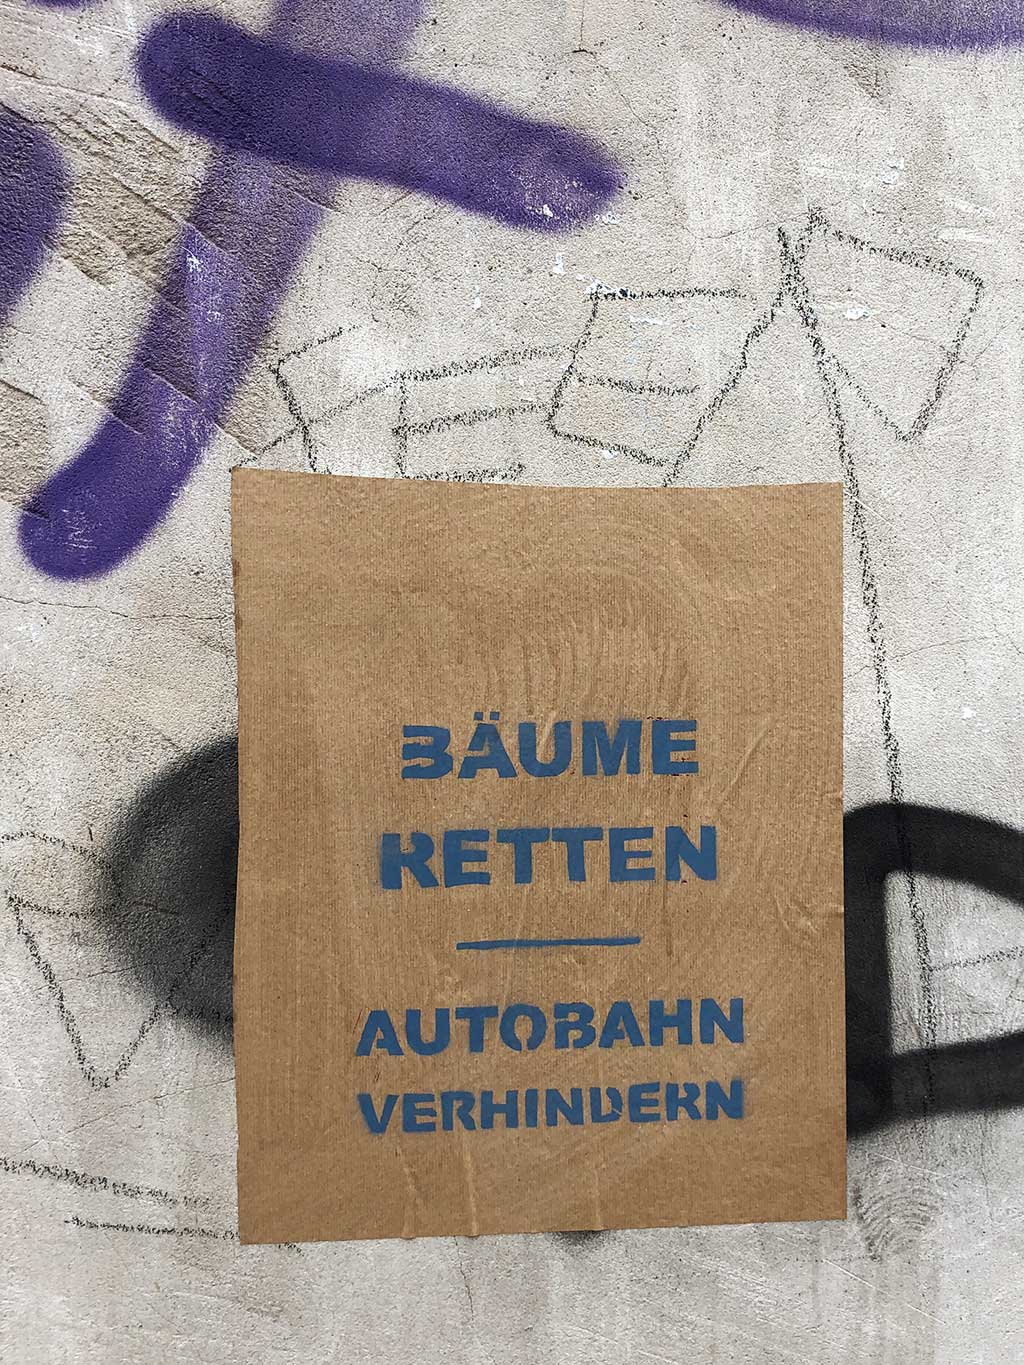 Fecher bleibt - Protest-Parolen und -Plakate in Frankfurt